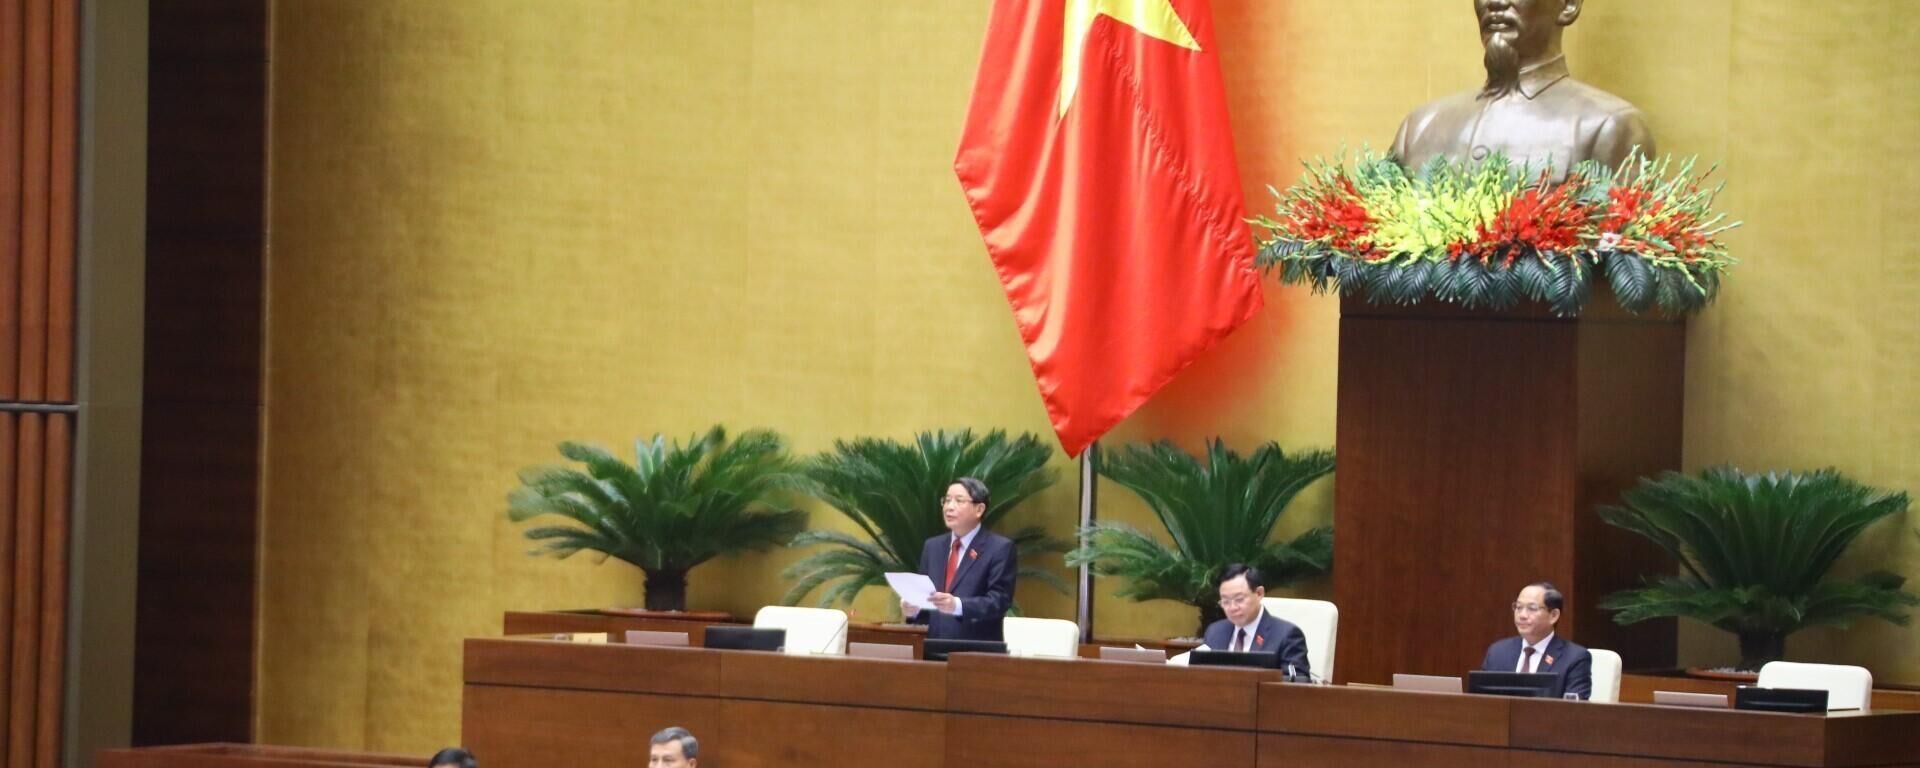 Phó Chủ tịch Quốc hội Nguyễn Đức Hải điều hành nội dung phiên họp - Sputnik Việt Nam, 1920, 11.11.2022